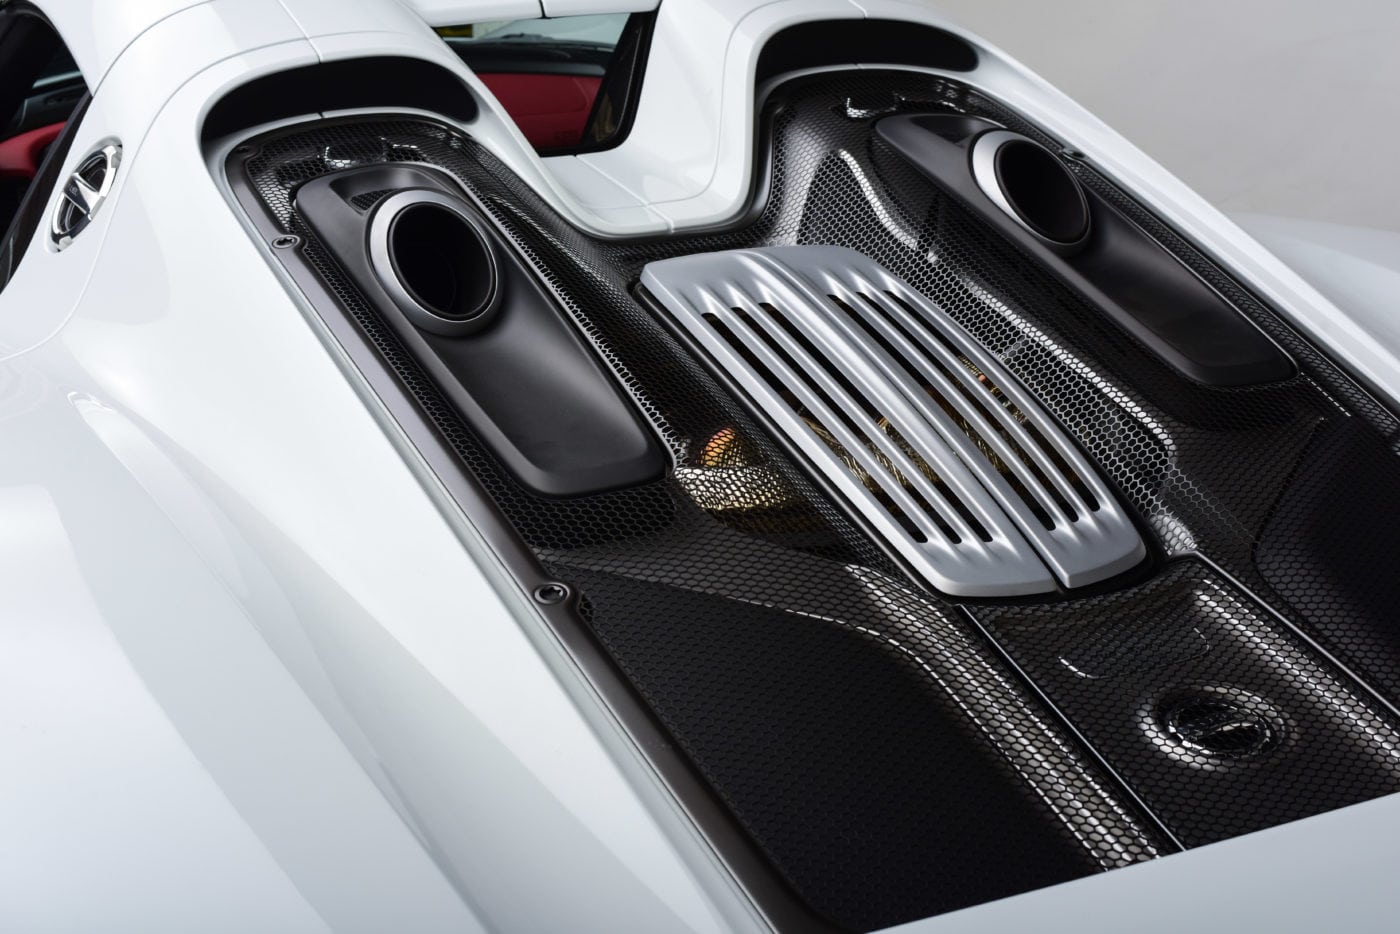 Porsche 918 Spyder Specs include elegant exhaust